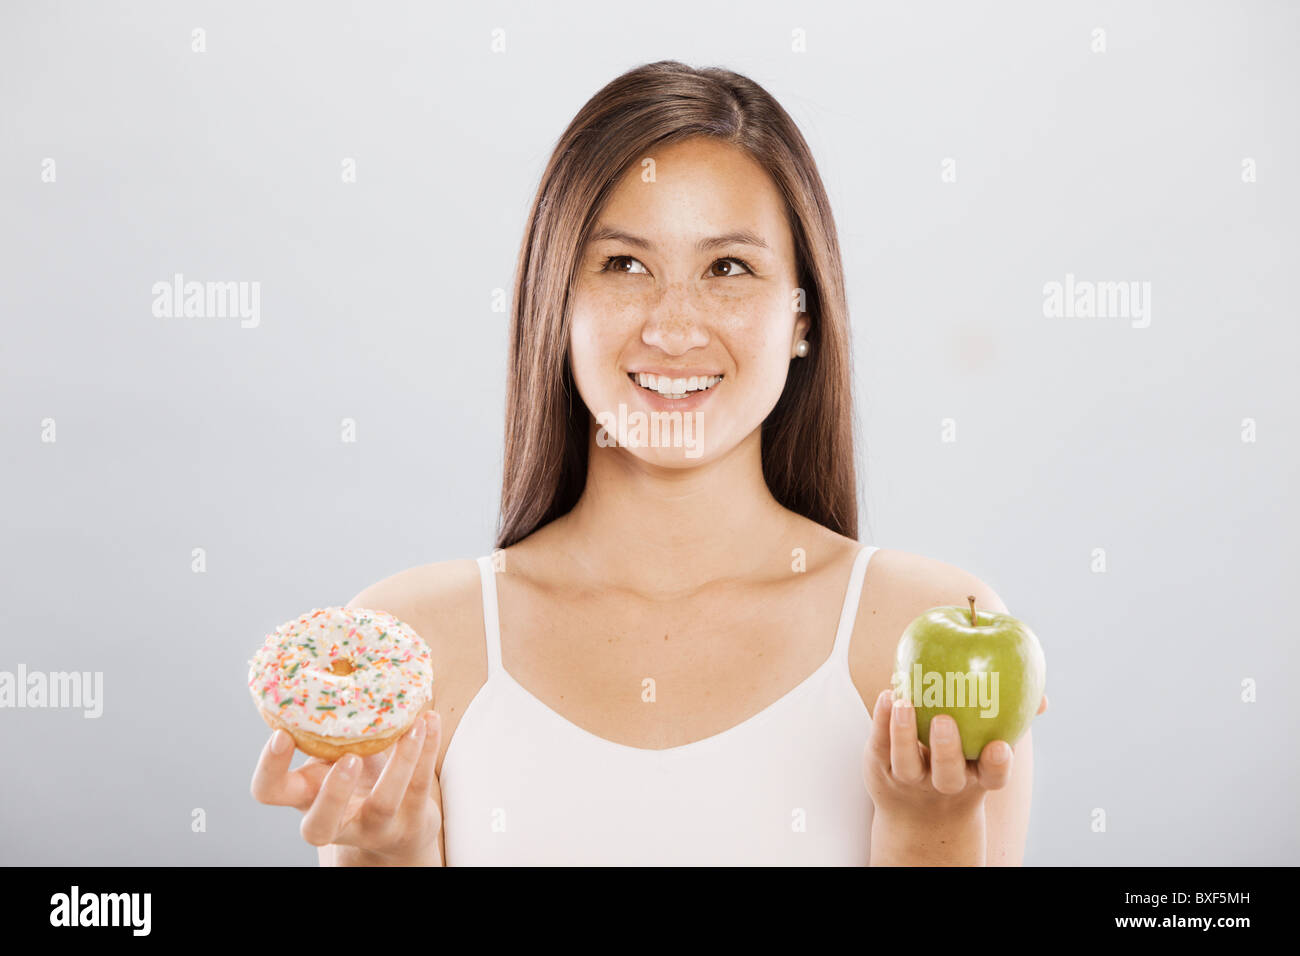 Frau hält einen Donut und ein Apfel Stockfoto